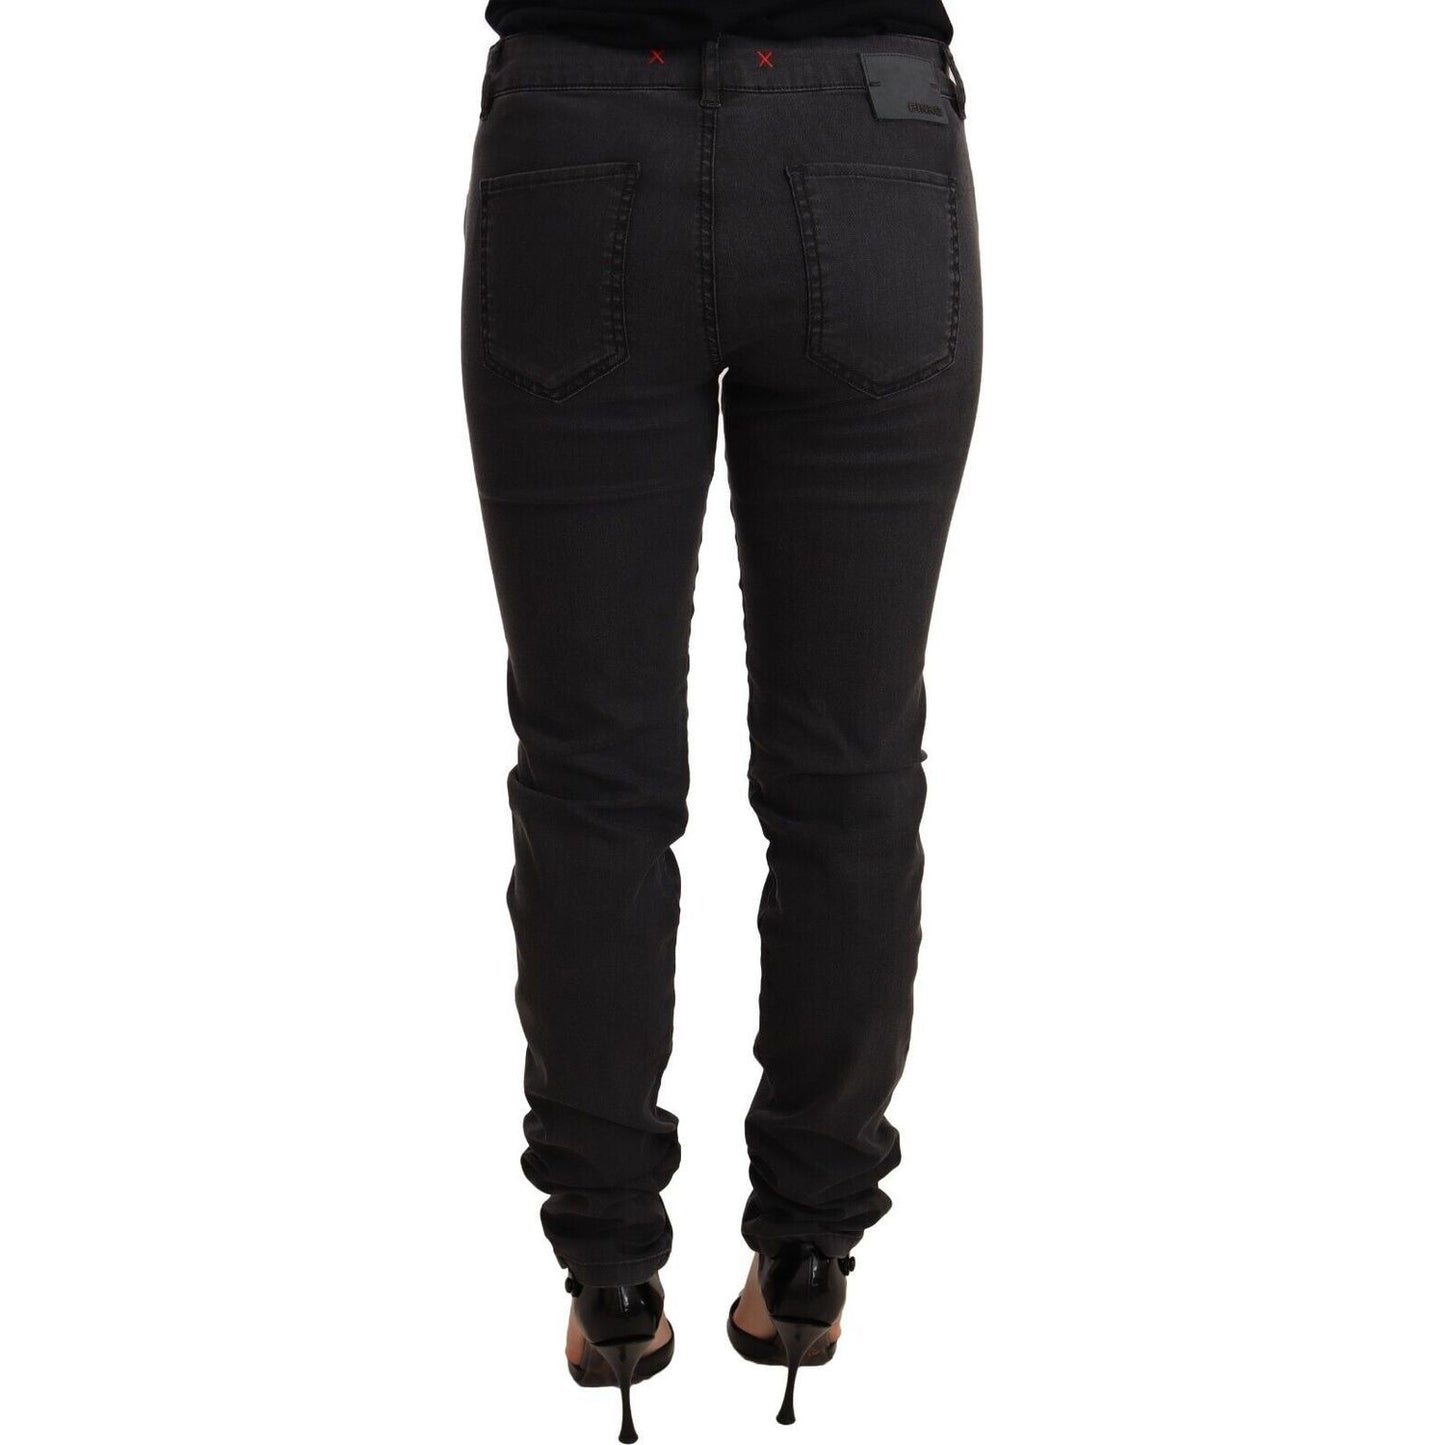 PINKO Chic Mid Waist Skinny Black Denim Jeans & Pants black-cotton-stretch-skinny-mid-waist-women-denim-jeans s-l1600-2-94-74dd2669-515.jpg